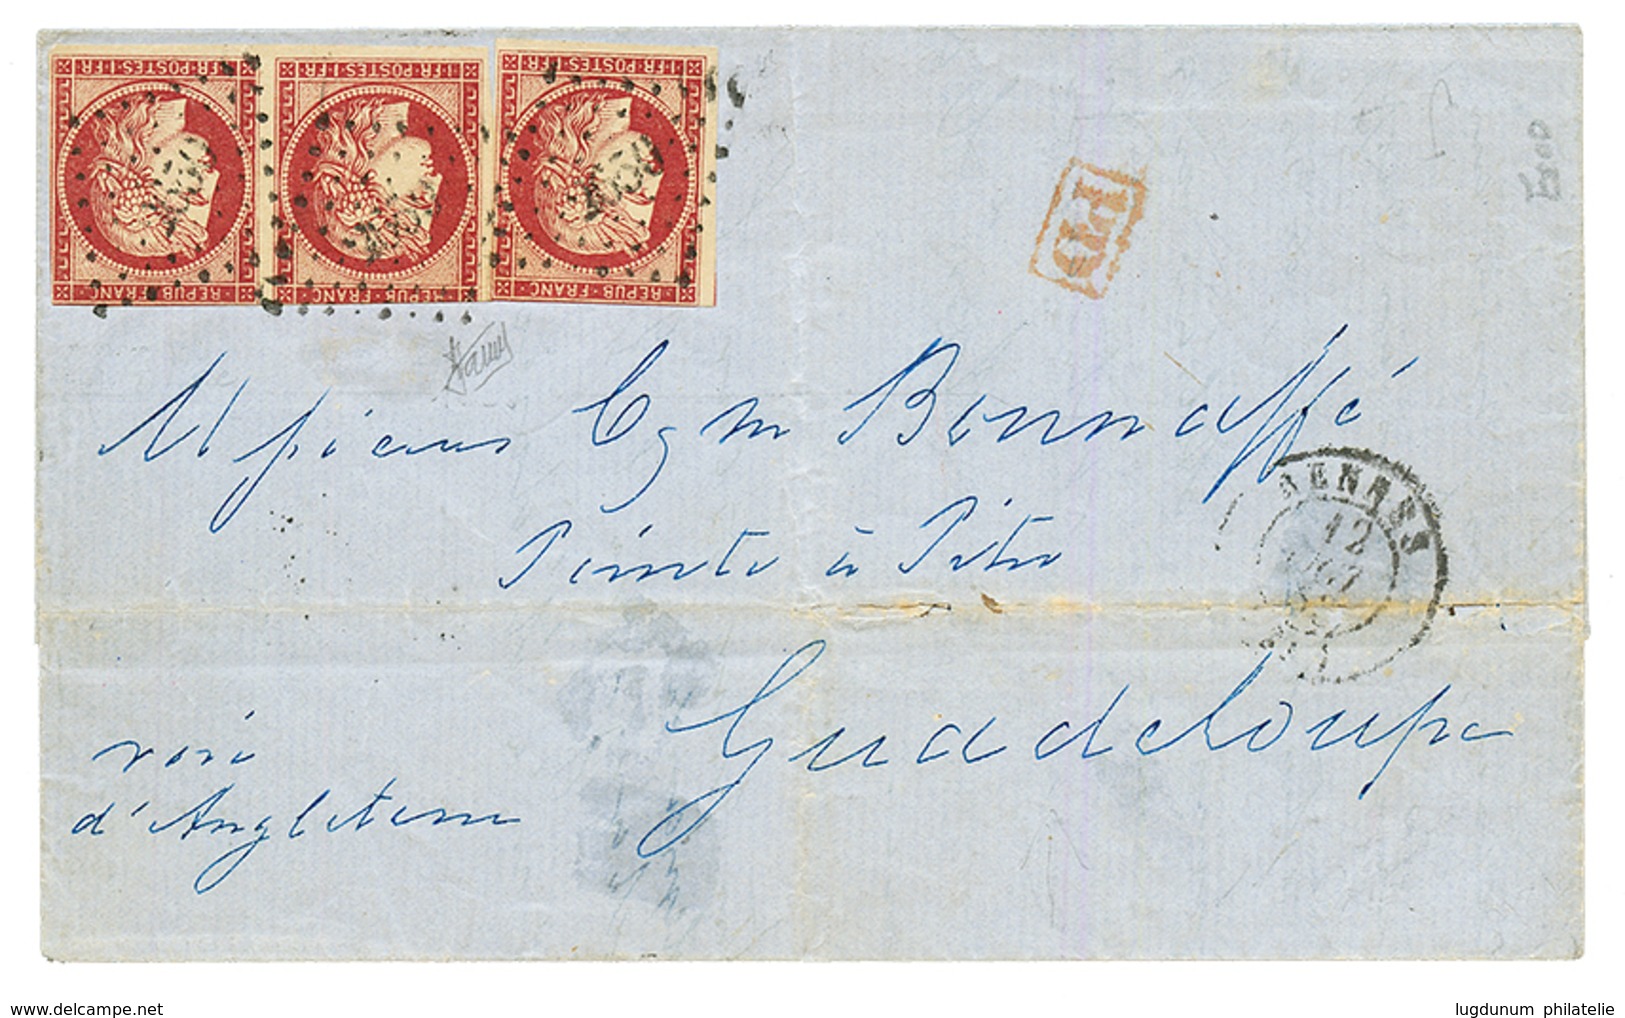 1853 1F (n°6)x3 Pd Obl. PC 2650 + T.15 RENNES Sur Lettre Pour La GUADELOUPE. RARE. TB. - 1849-1850 Ceres